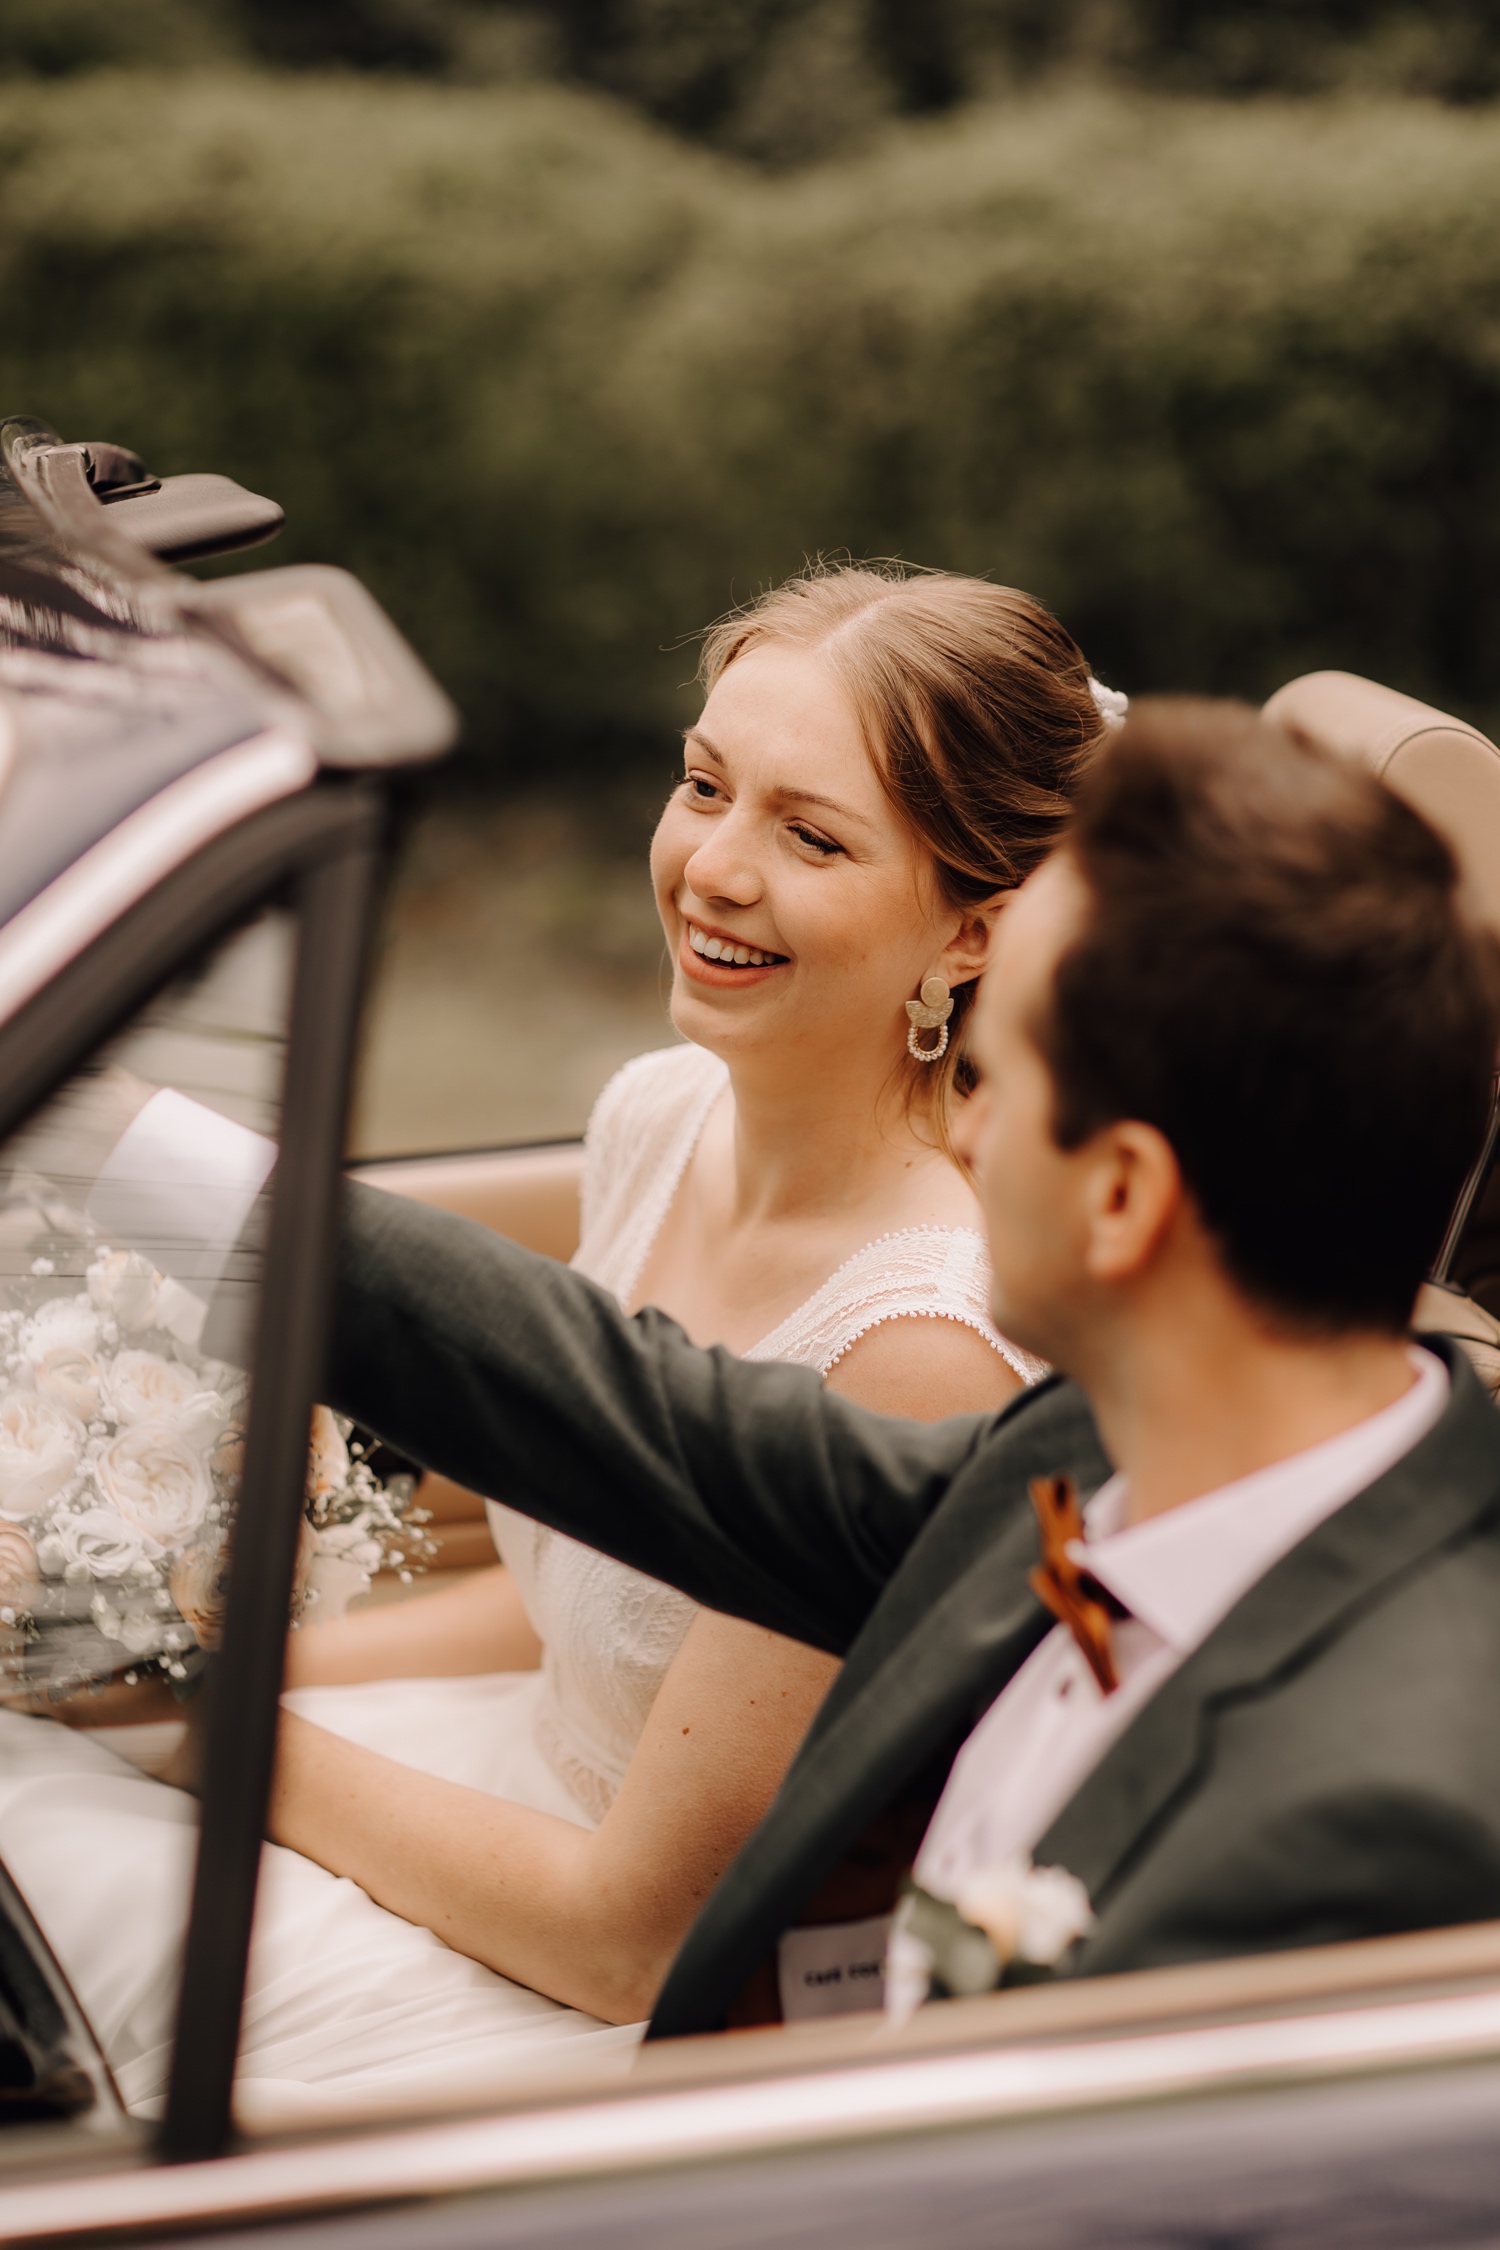 Huwelijksfotograaf Limburg - bruidspaar lacht in bruidswagen